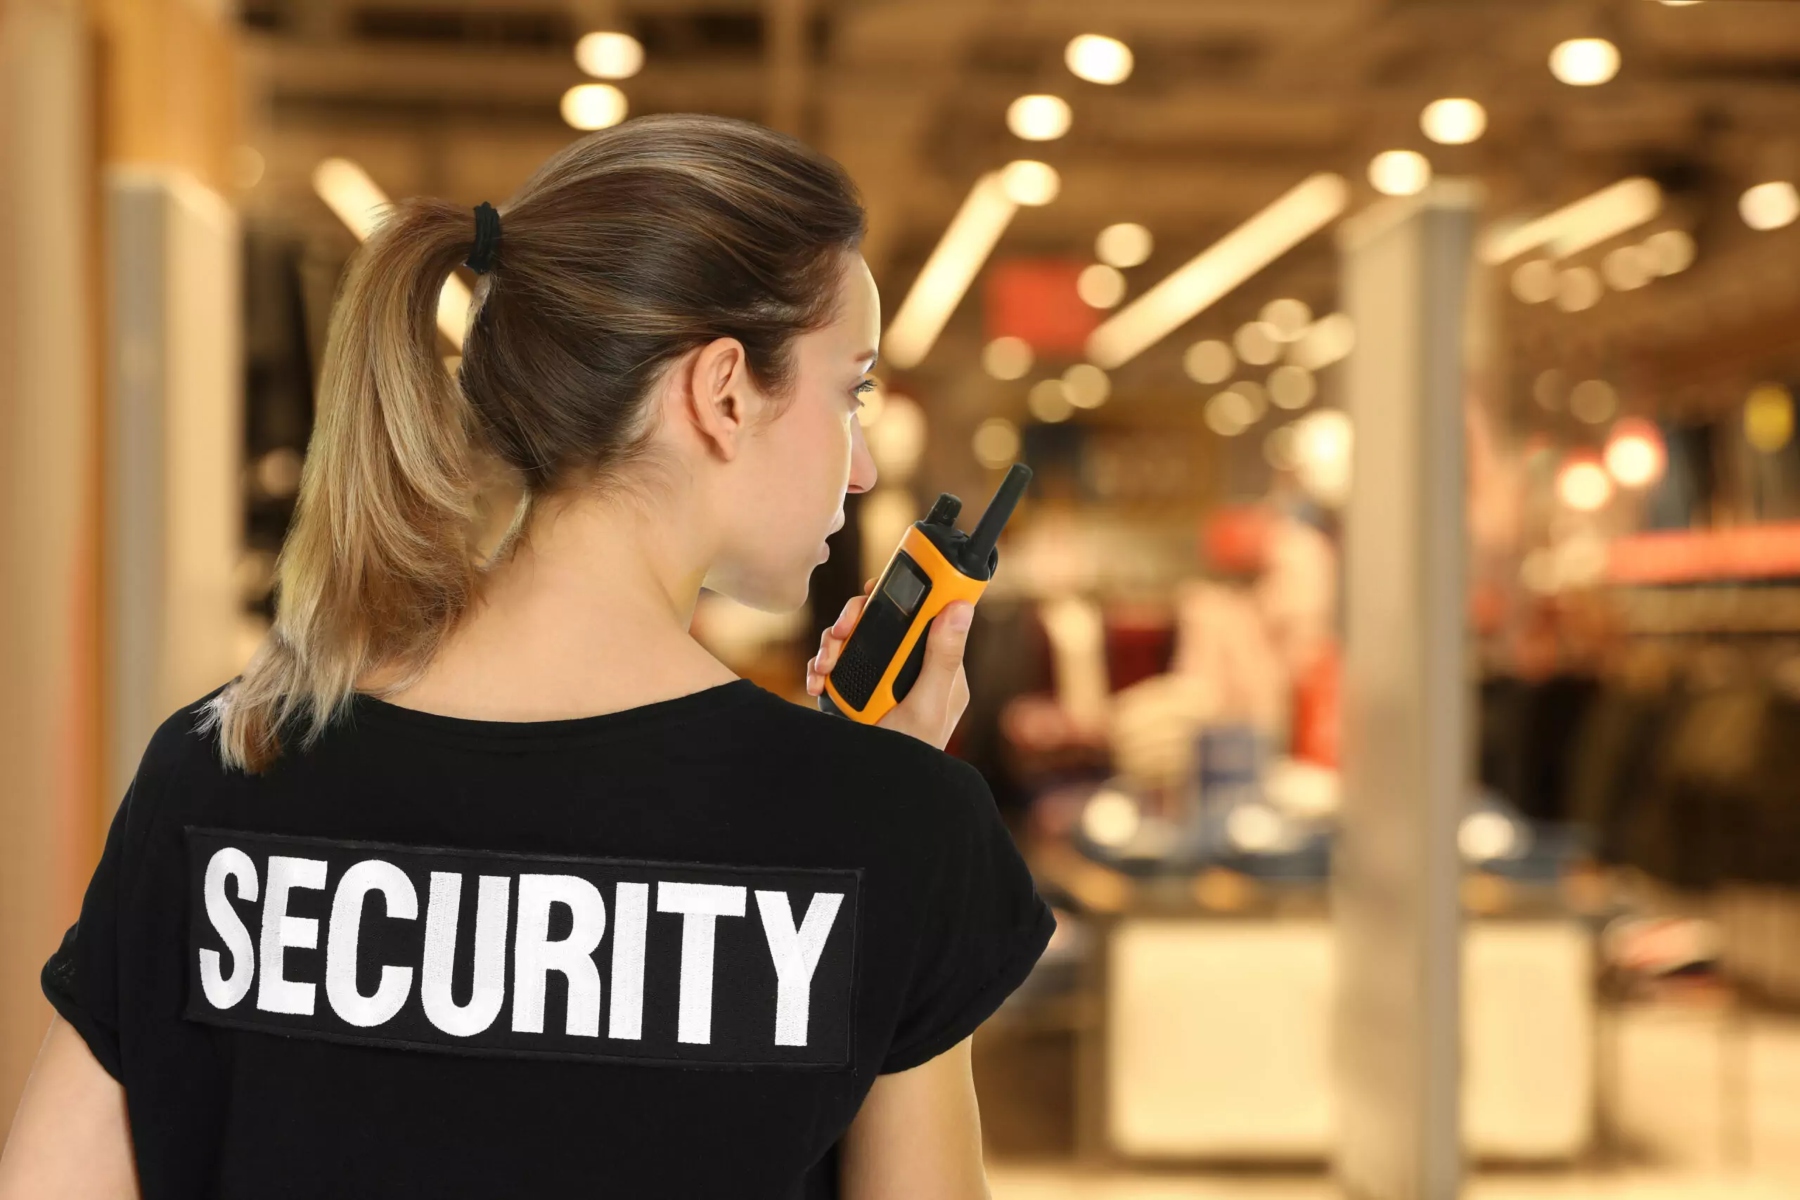 Security αυτοφροντίδα: Ποιες τακτικές αυτοφροντίδας πρέπει να ακολουθήσετε αν δουλεύετε ως ιδιωτικός security;